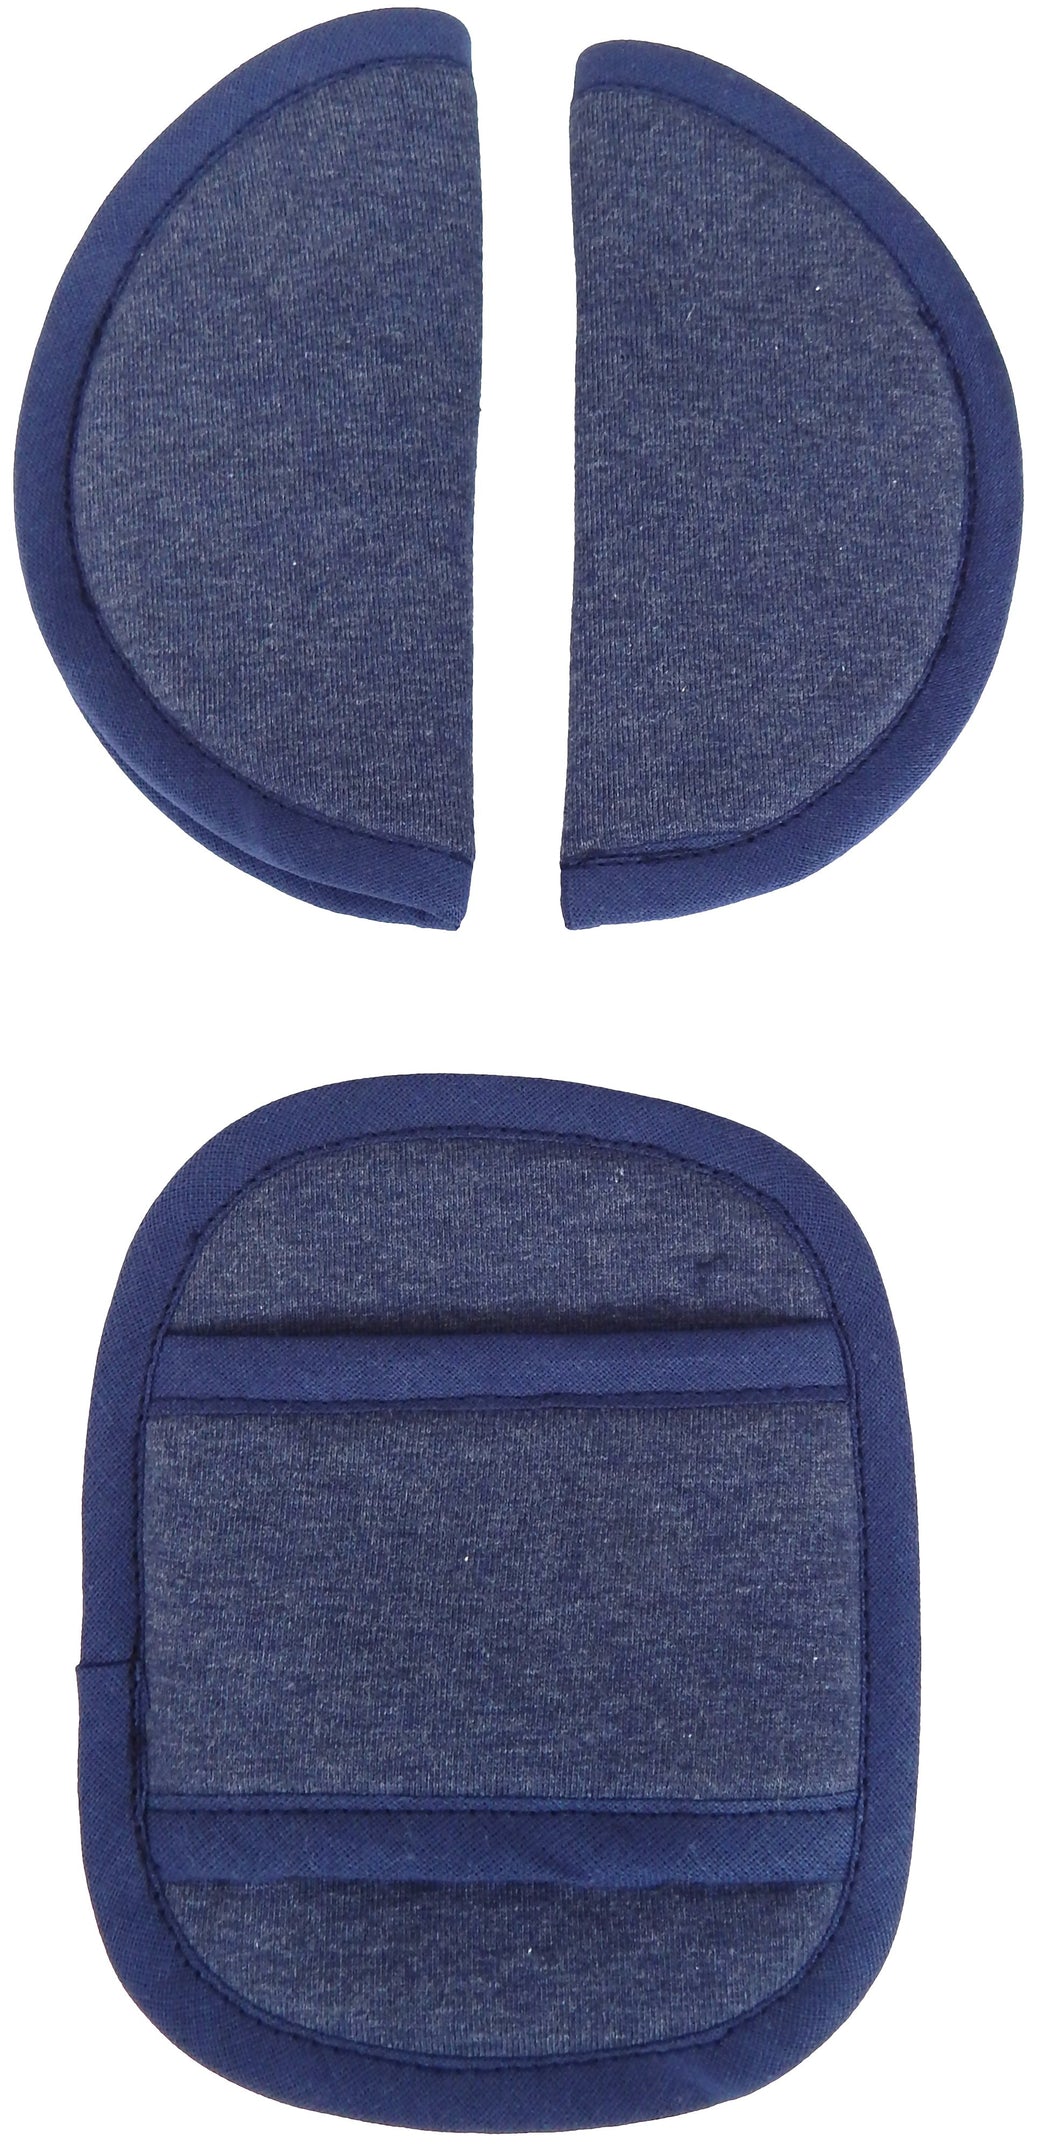 Maxi Cosi Seat Belt Pads - Denim Blue